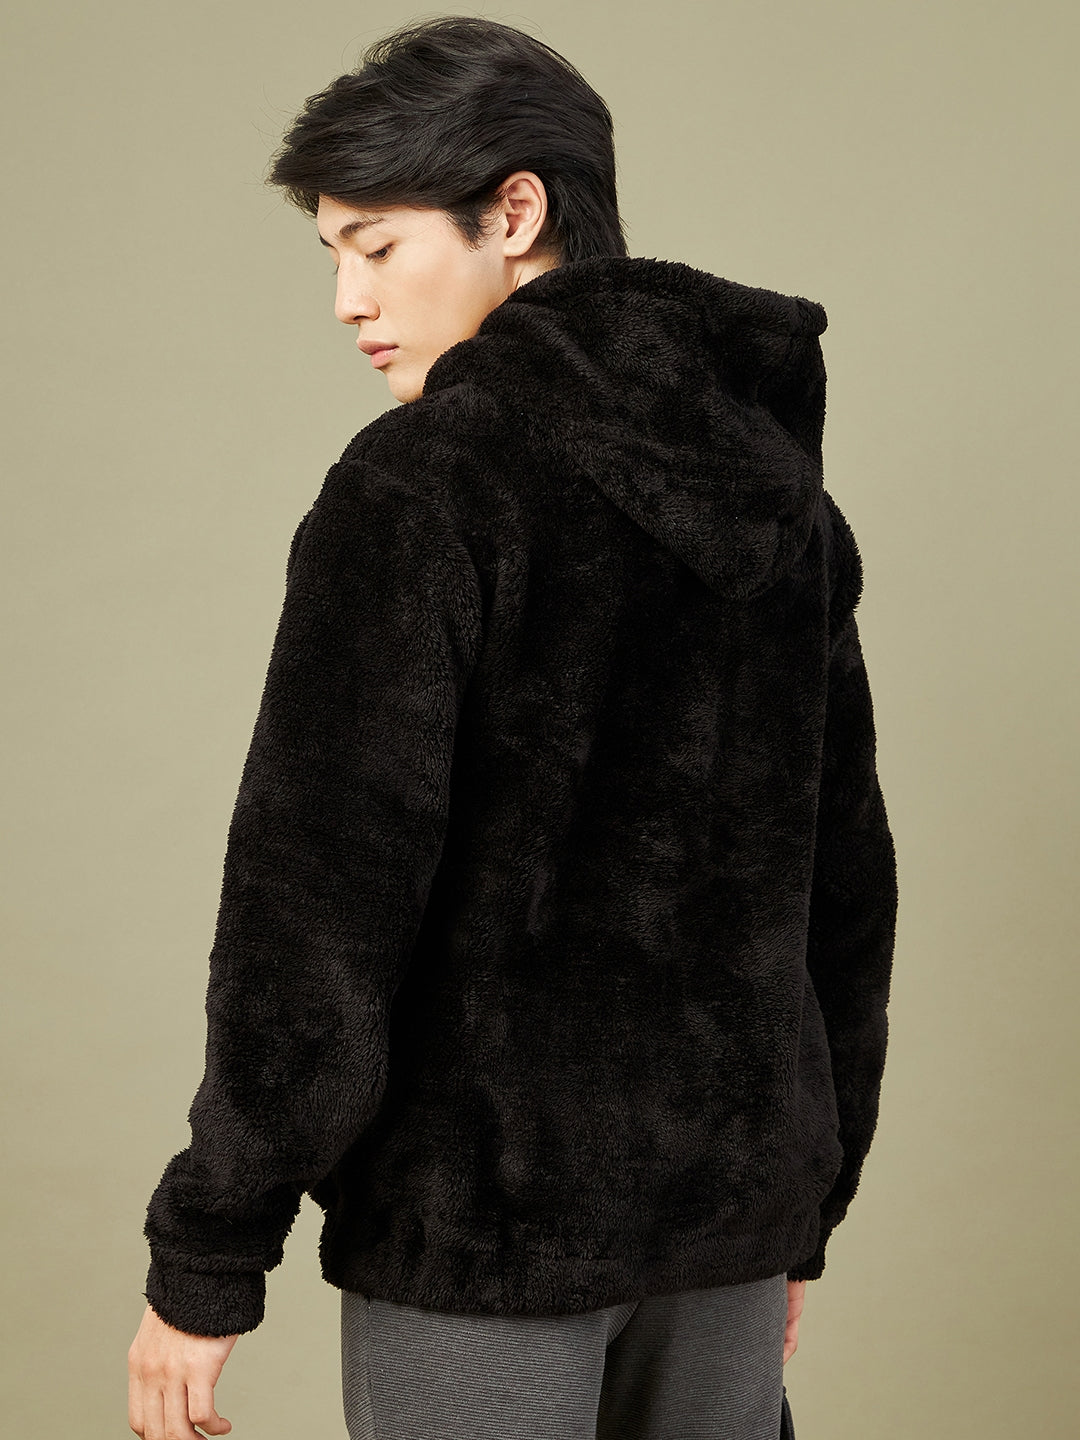 Men's Black Fur Kangaroo Pocket Hoodie - LYUSH-MASCLN